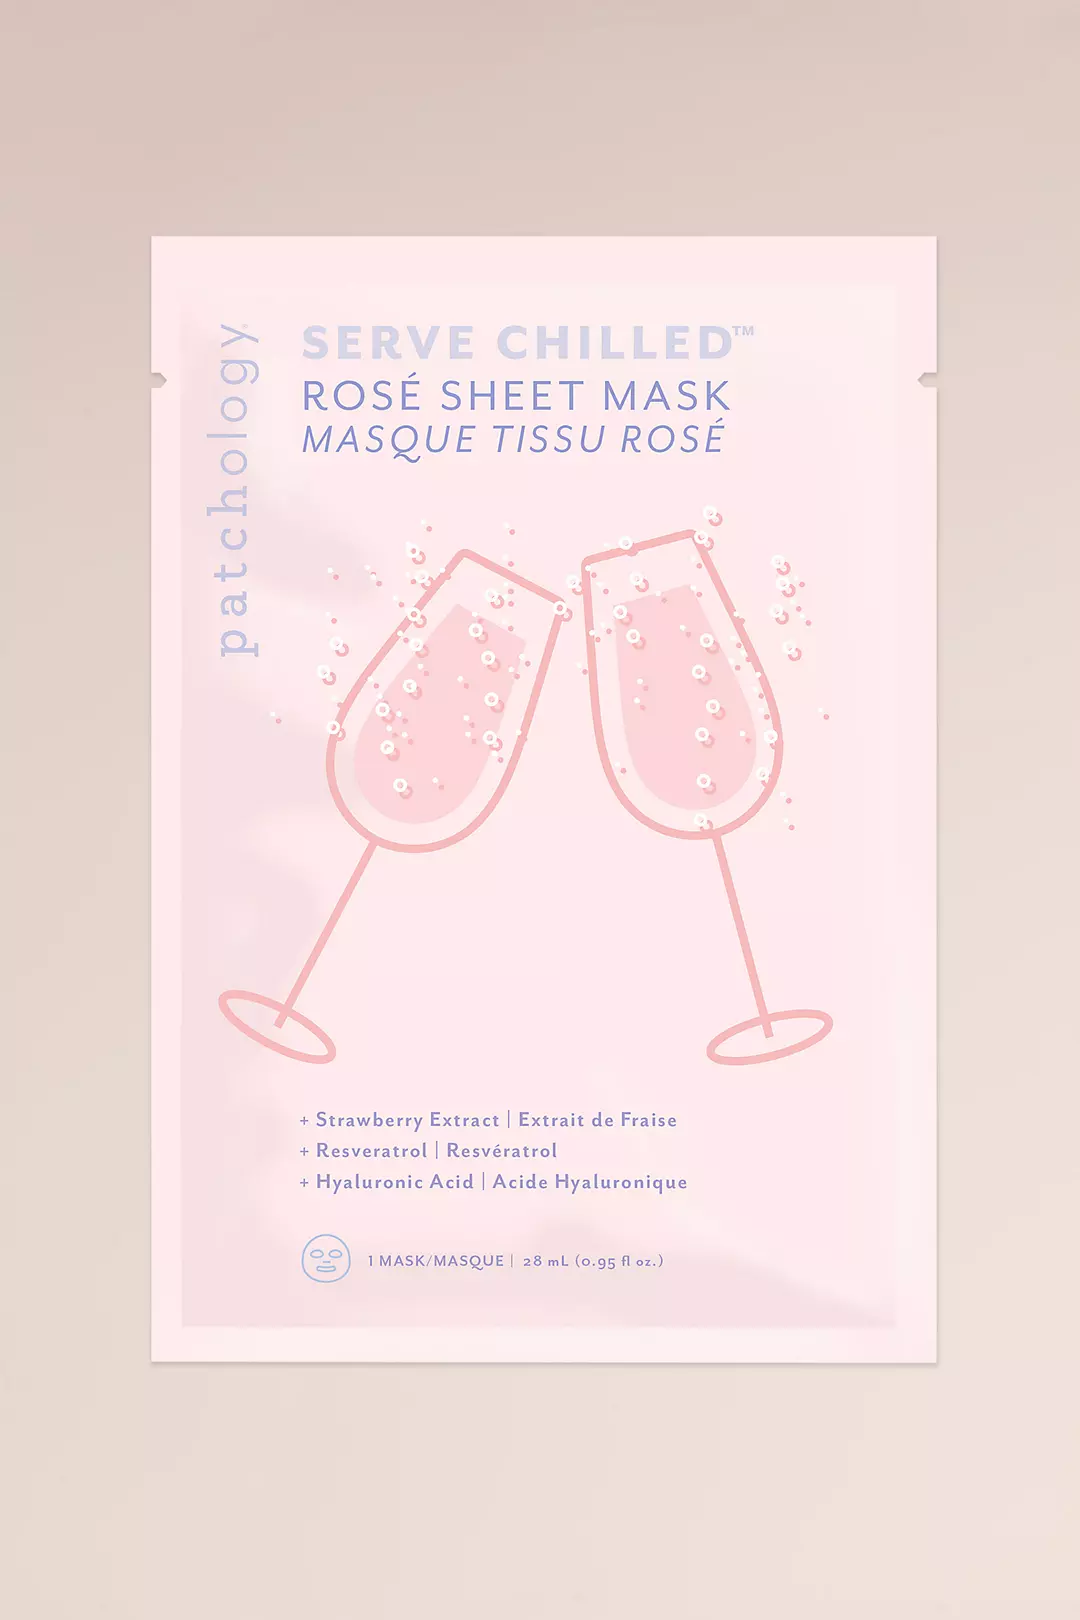 Patchology Serve Chilled Rose Sheet Mask Image